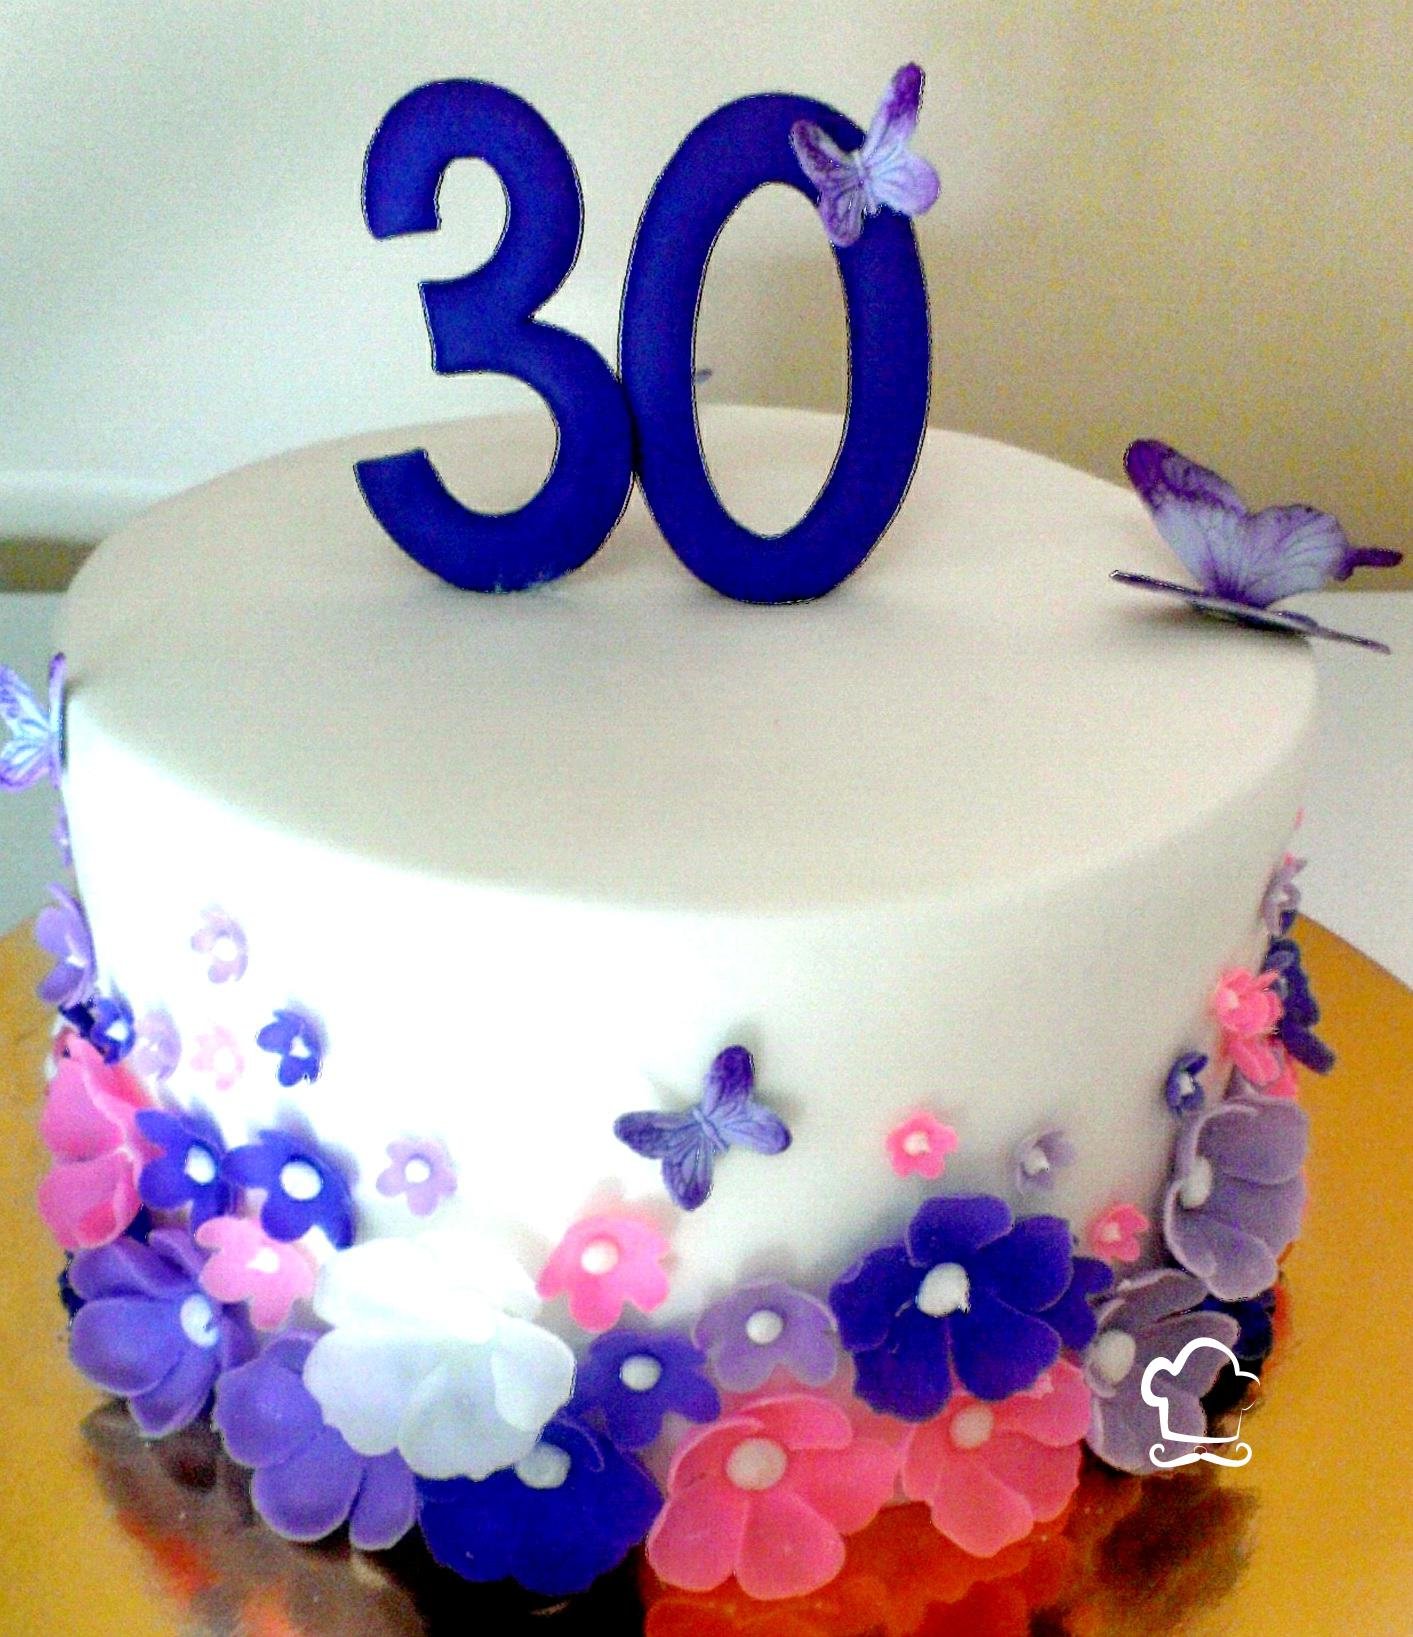 Картинки 30 лет девушке с днем рождения. Красивый торт на день рождения 30 лет. Торт на день рождения 30 лет девушке. Торт 30 лет девушке красивый на день рождения. Украшение торта на юбилей 30 лет девушке.